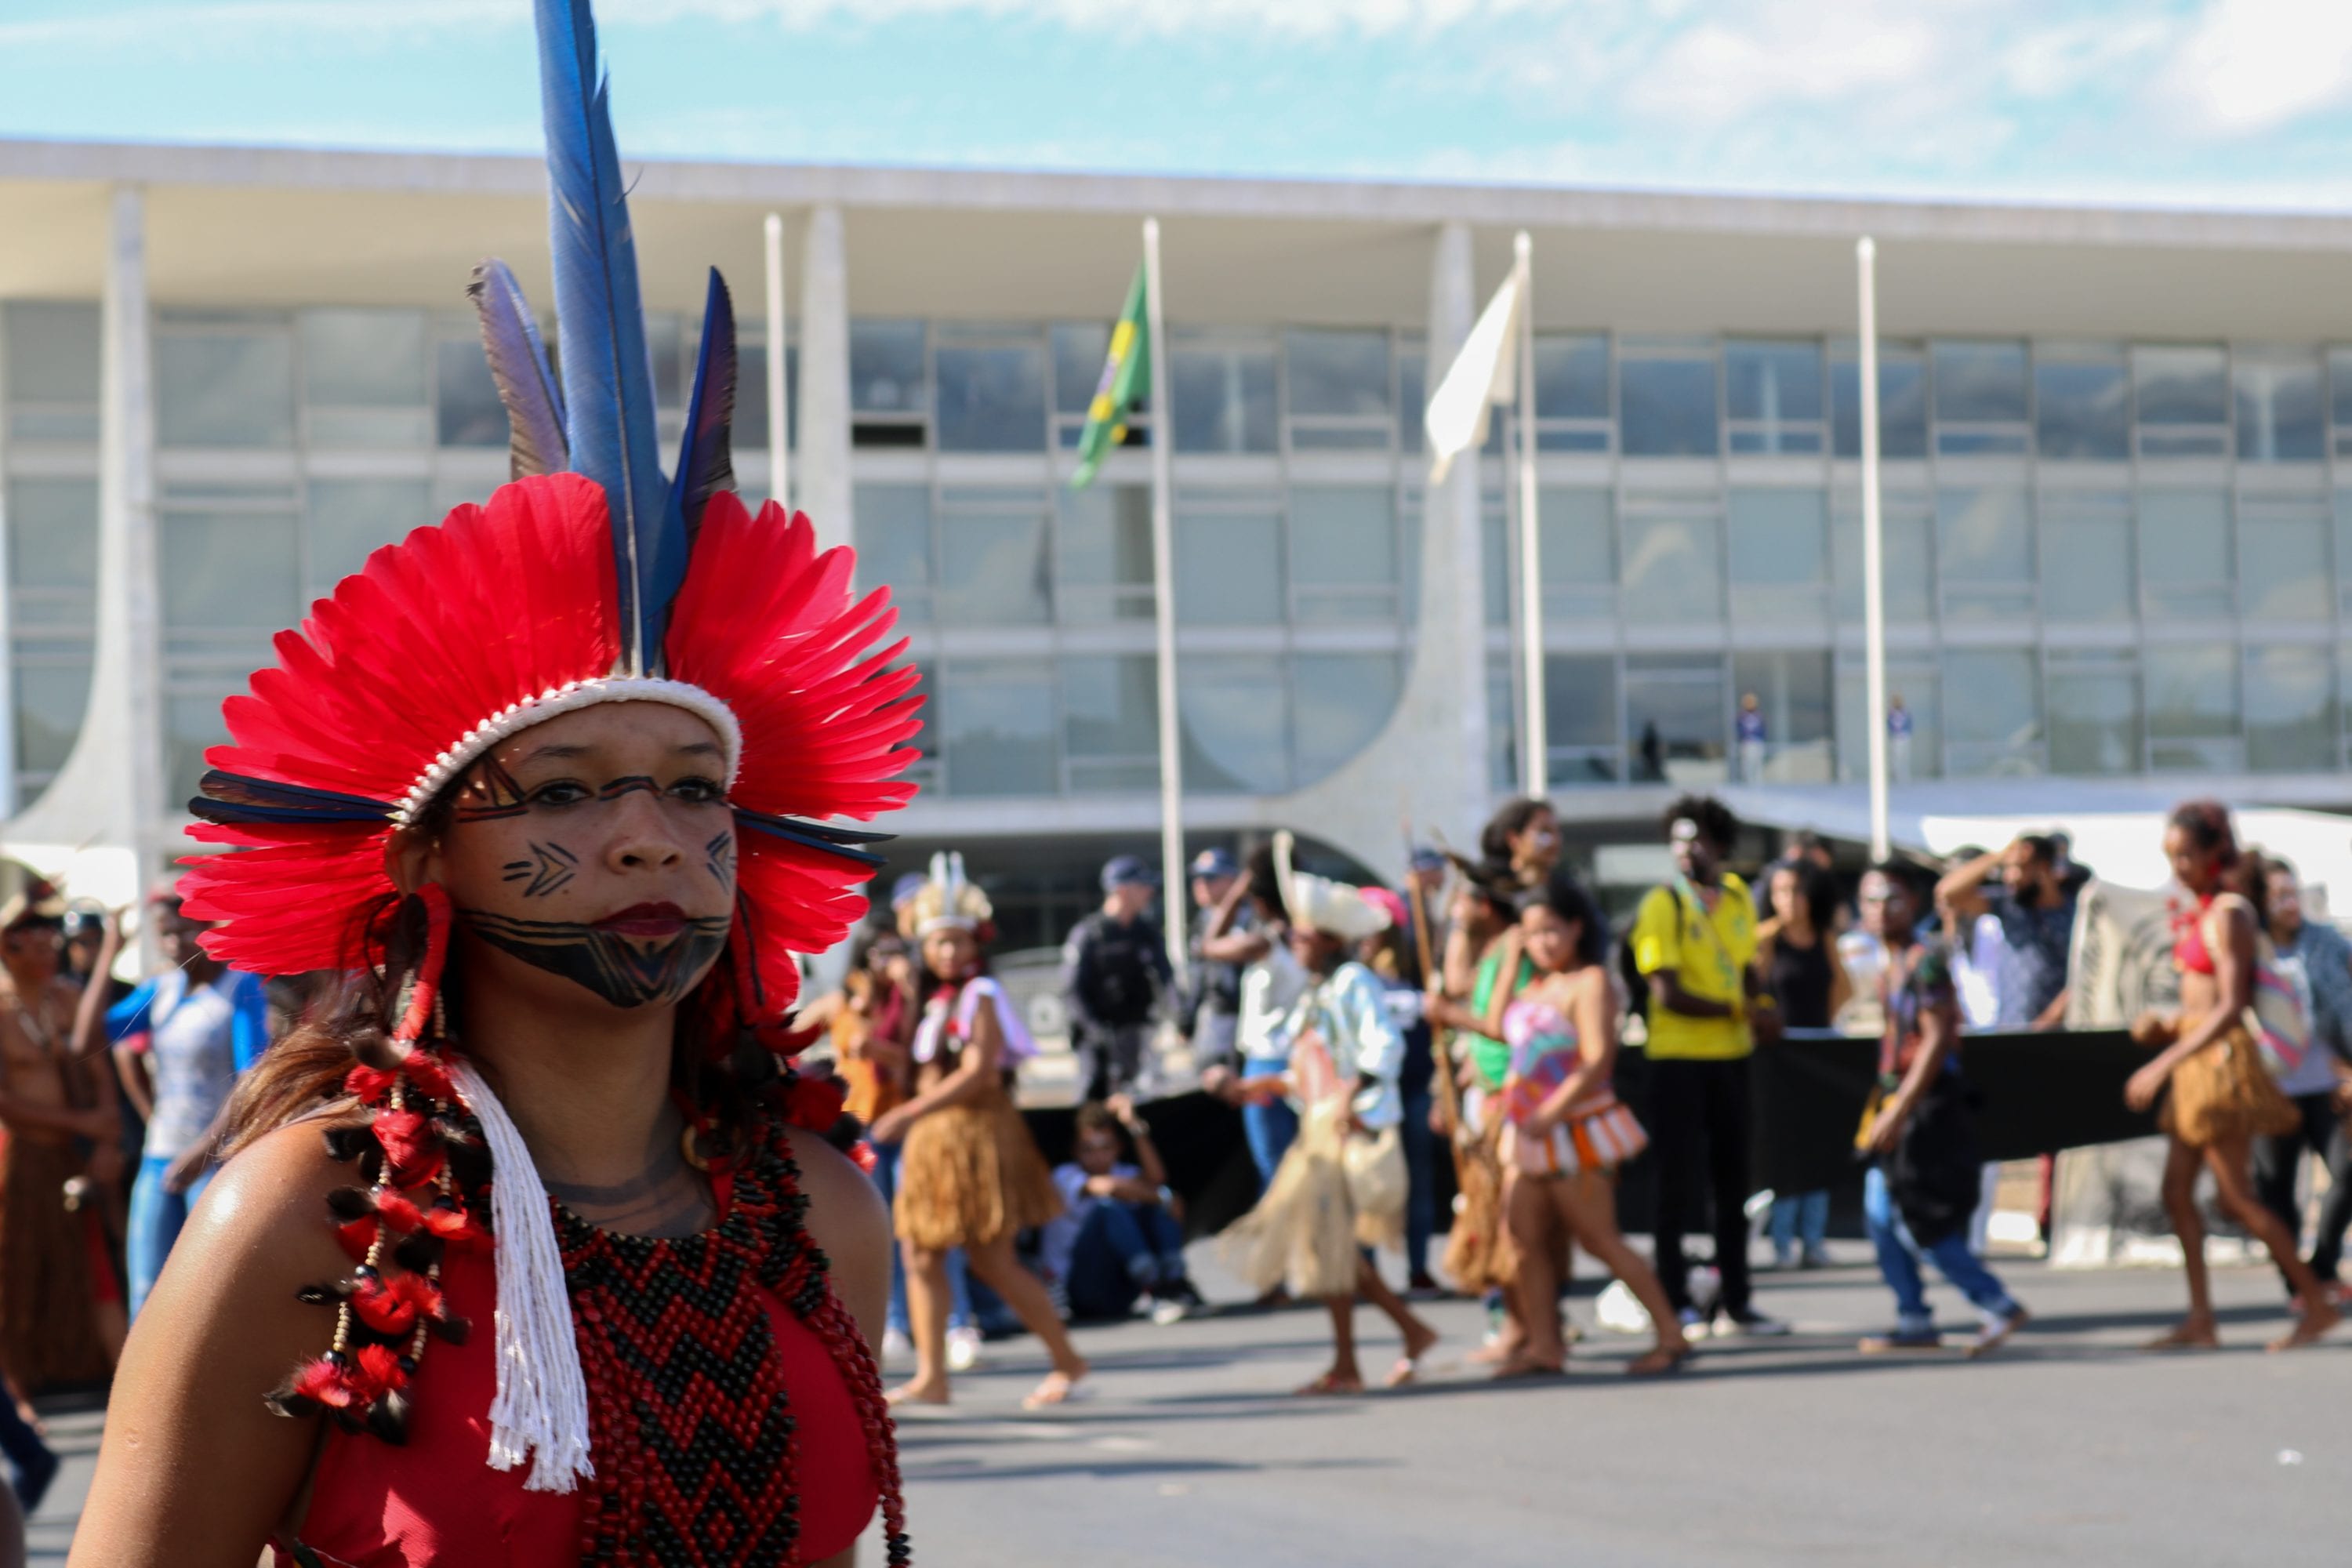 Assessoria Jurídica do Cimi divulga nota técnica sobre resolução da Funai que restringe autodeclaração indígena